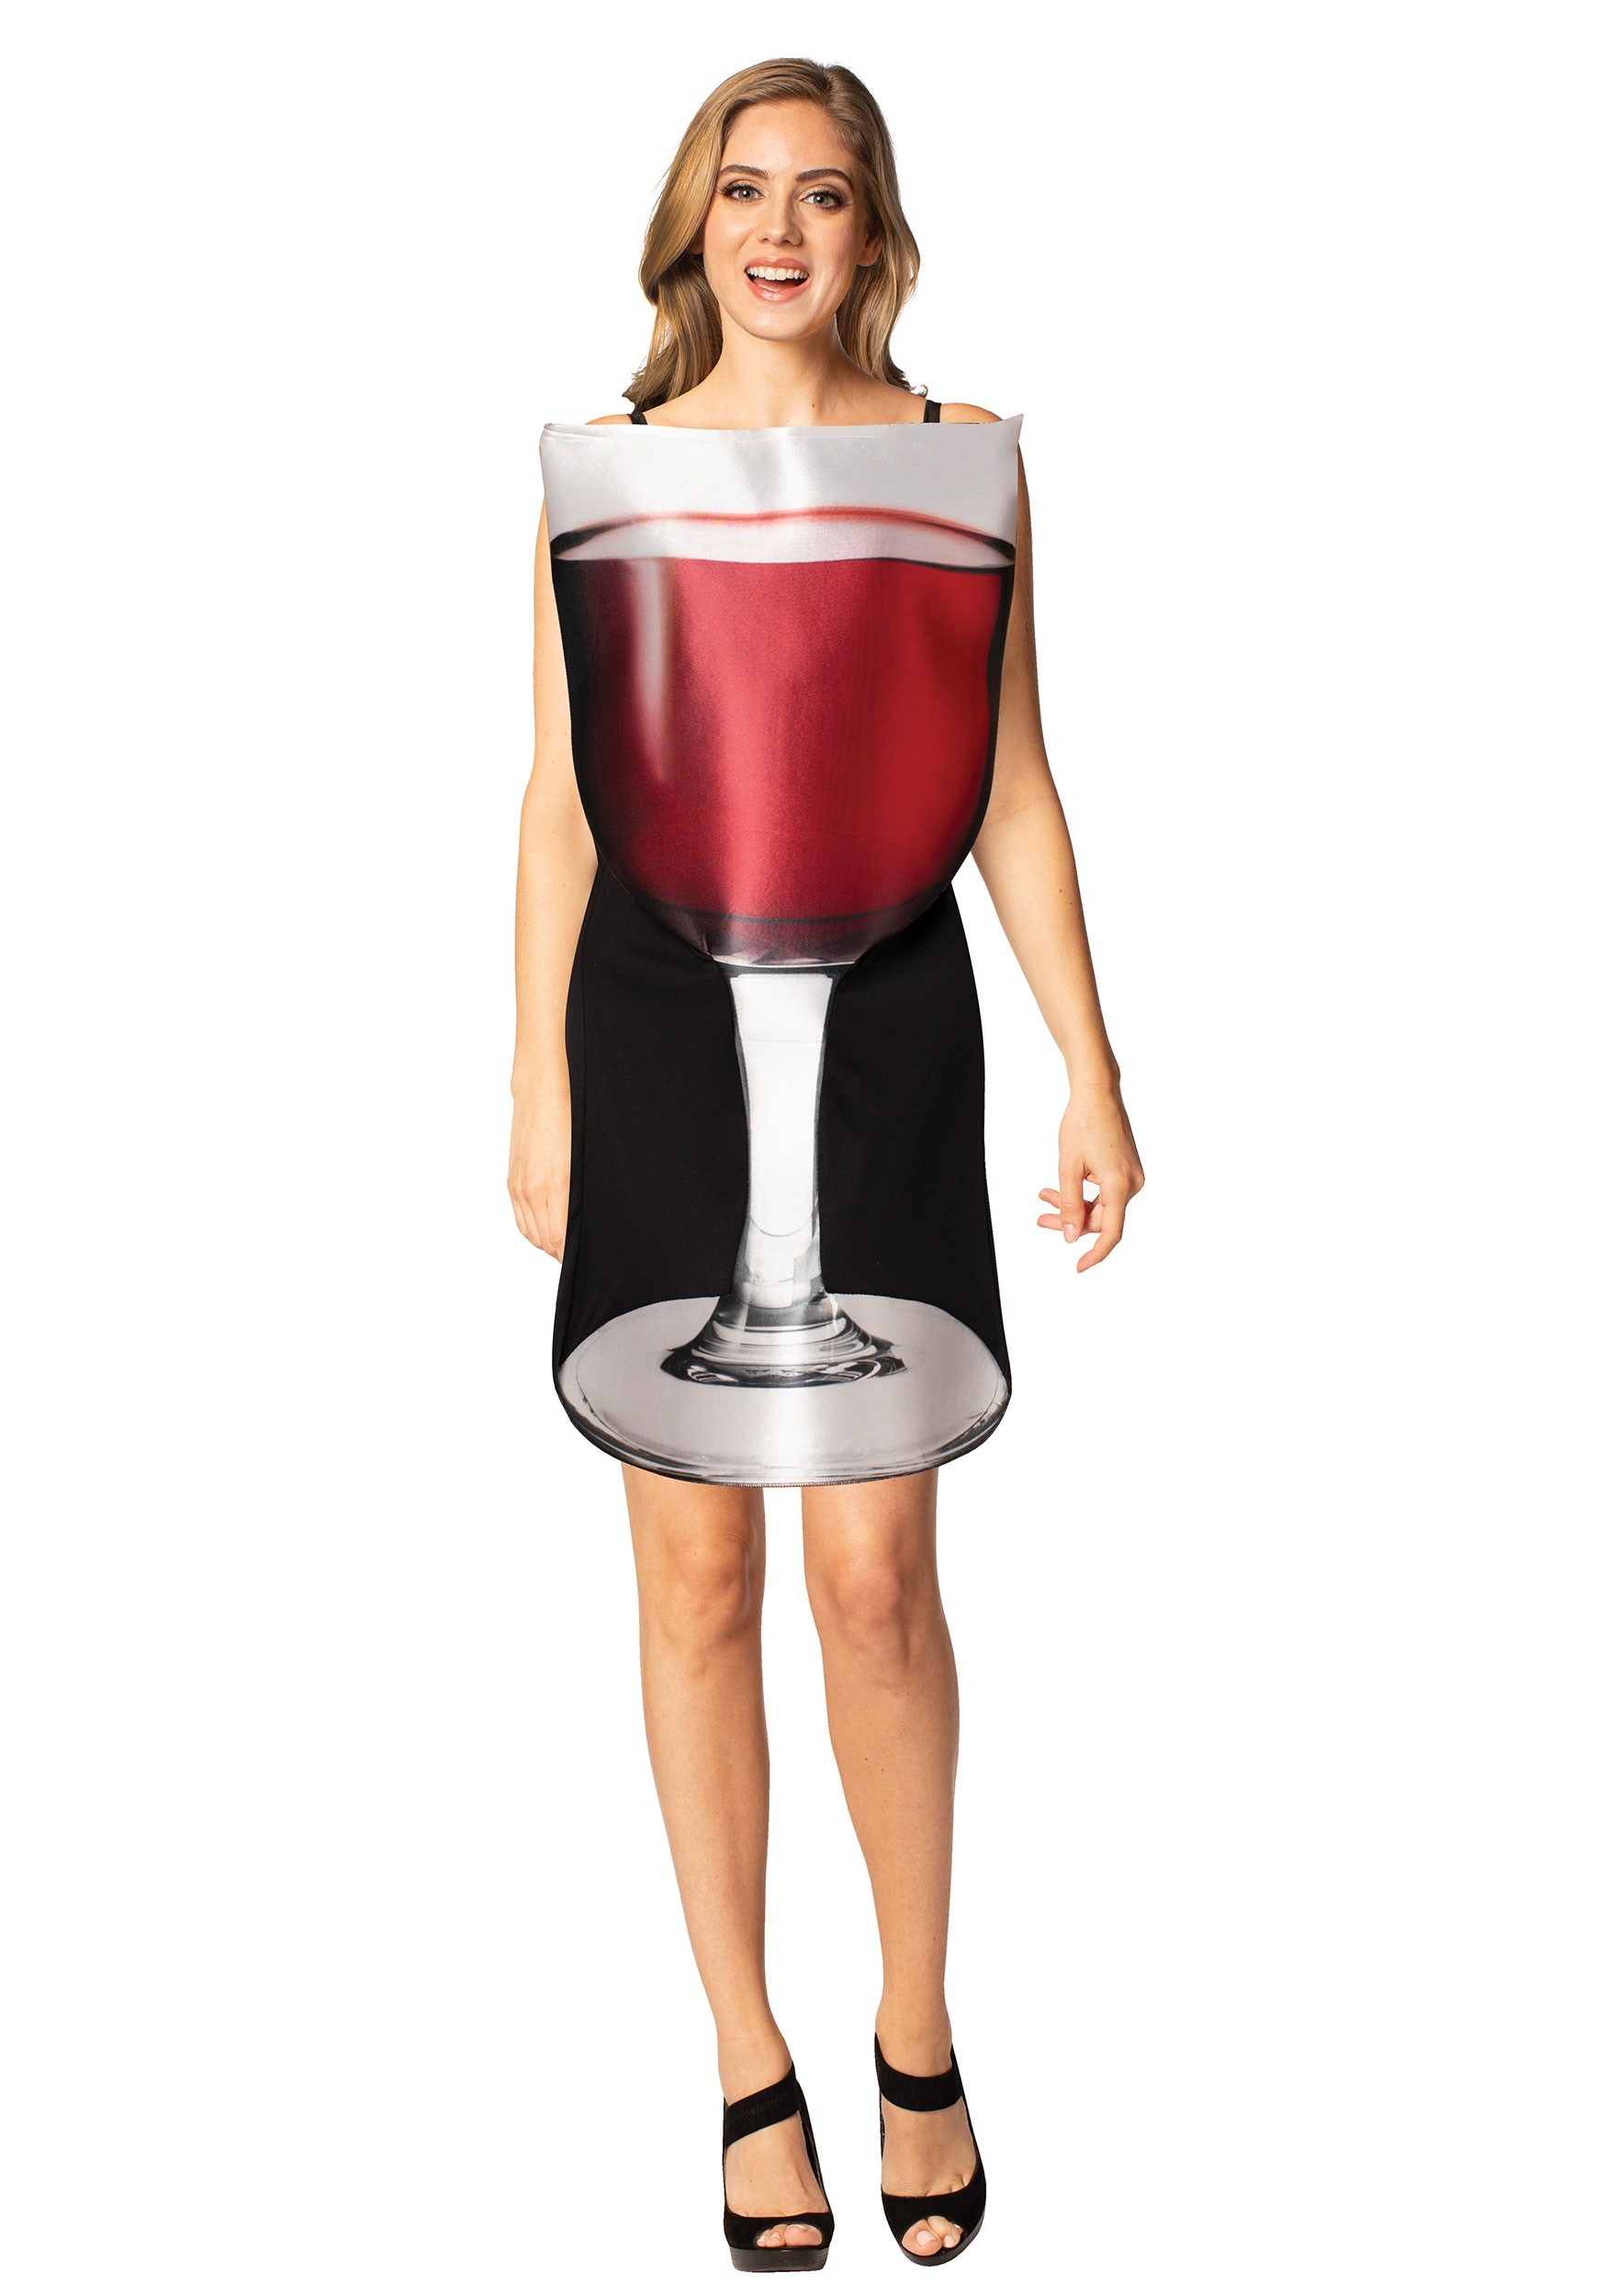 Women’s Glass of Red Wine Costume